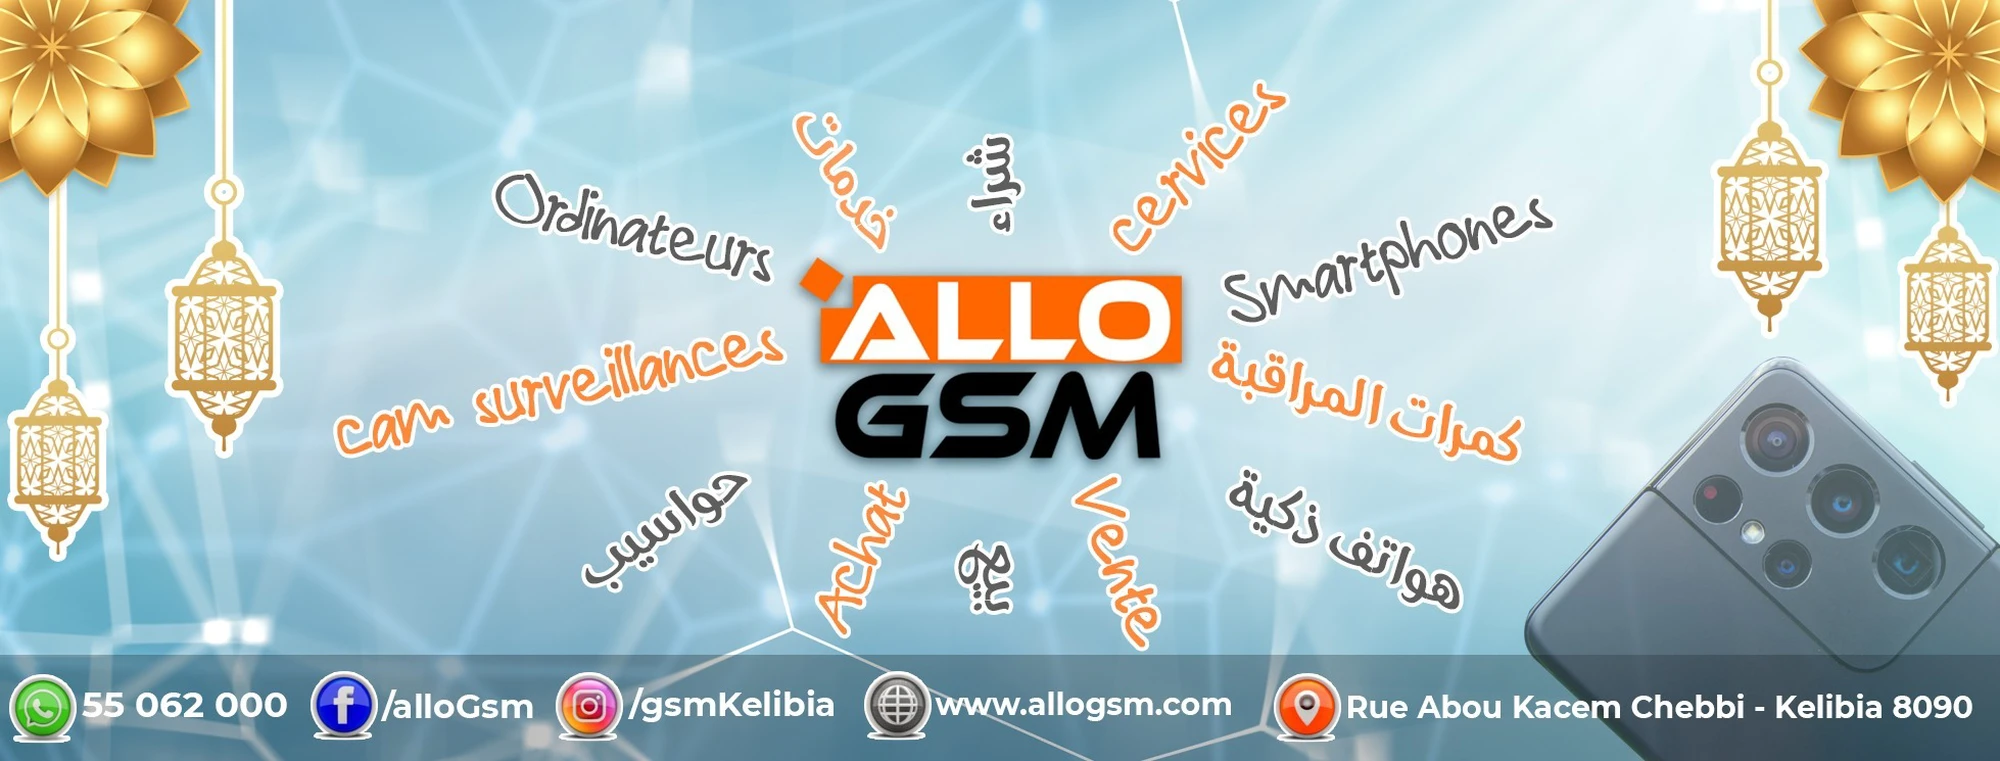 tayara shop cover of Allo GSM